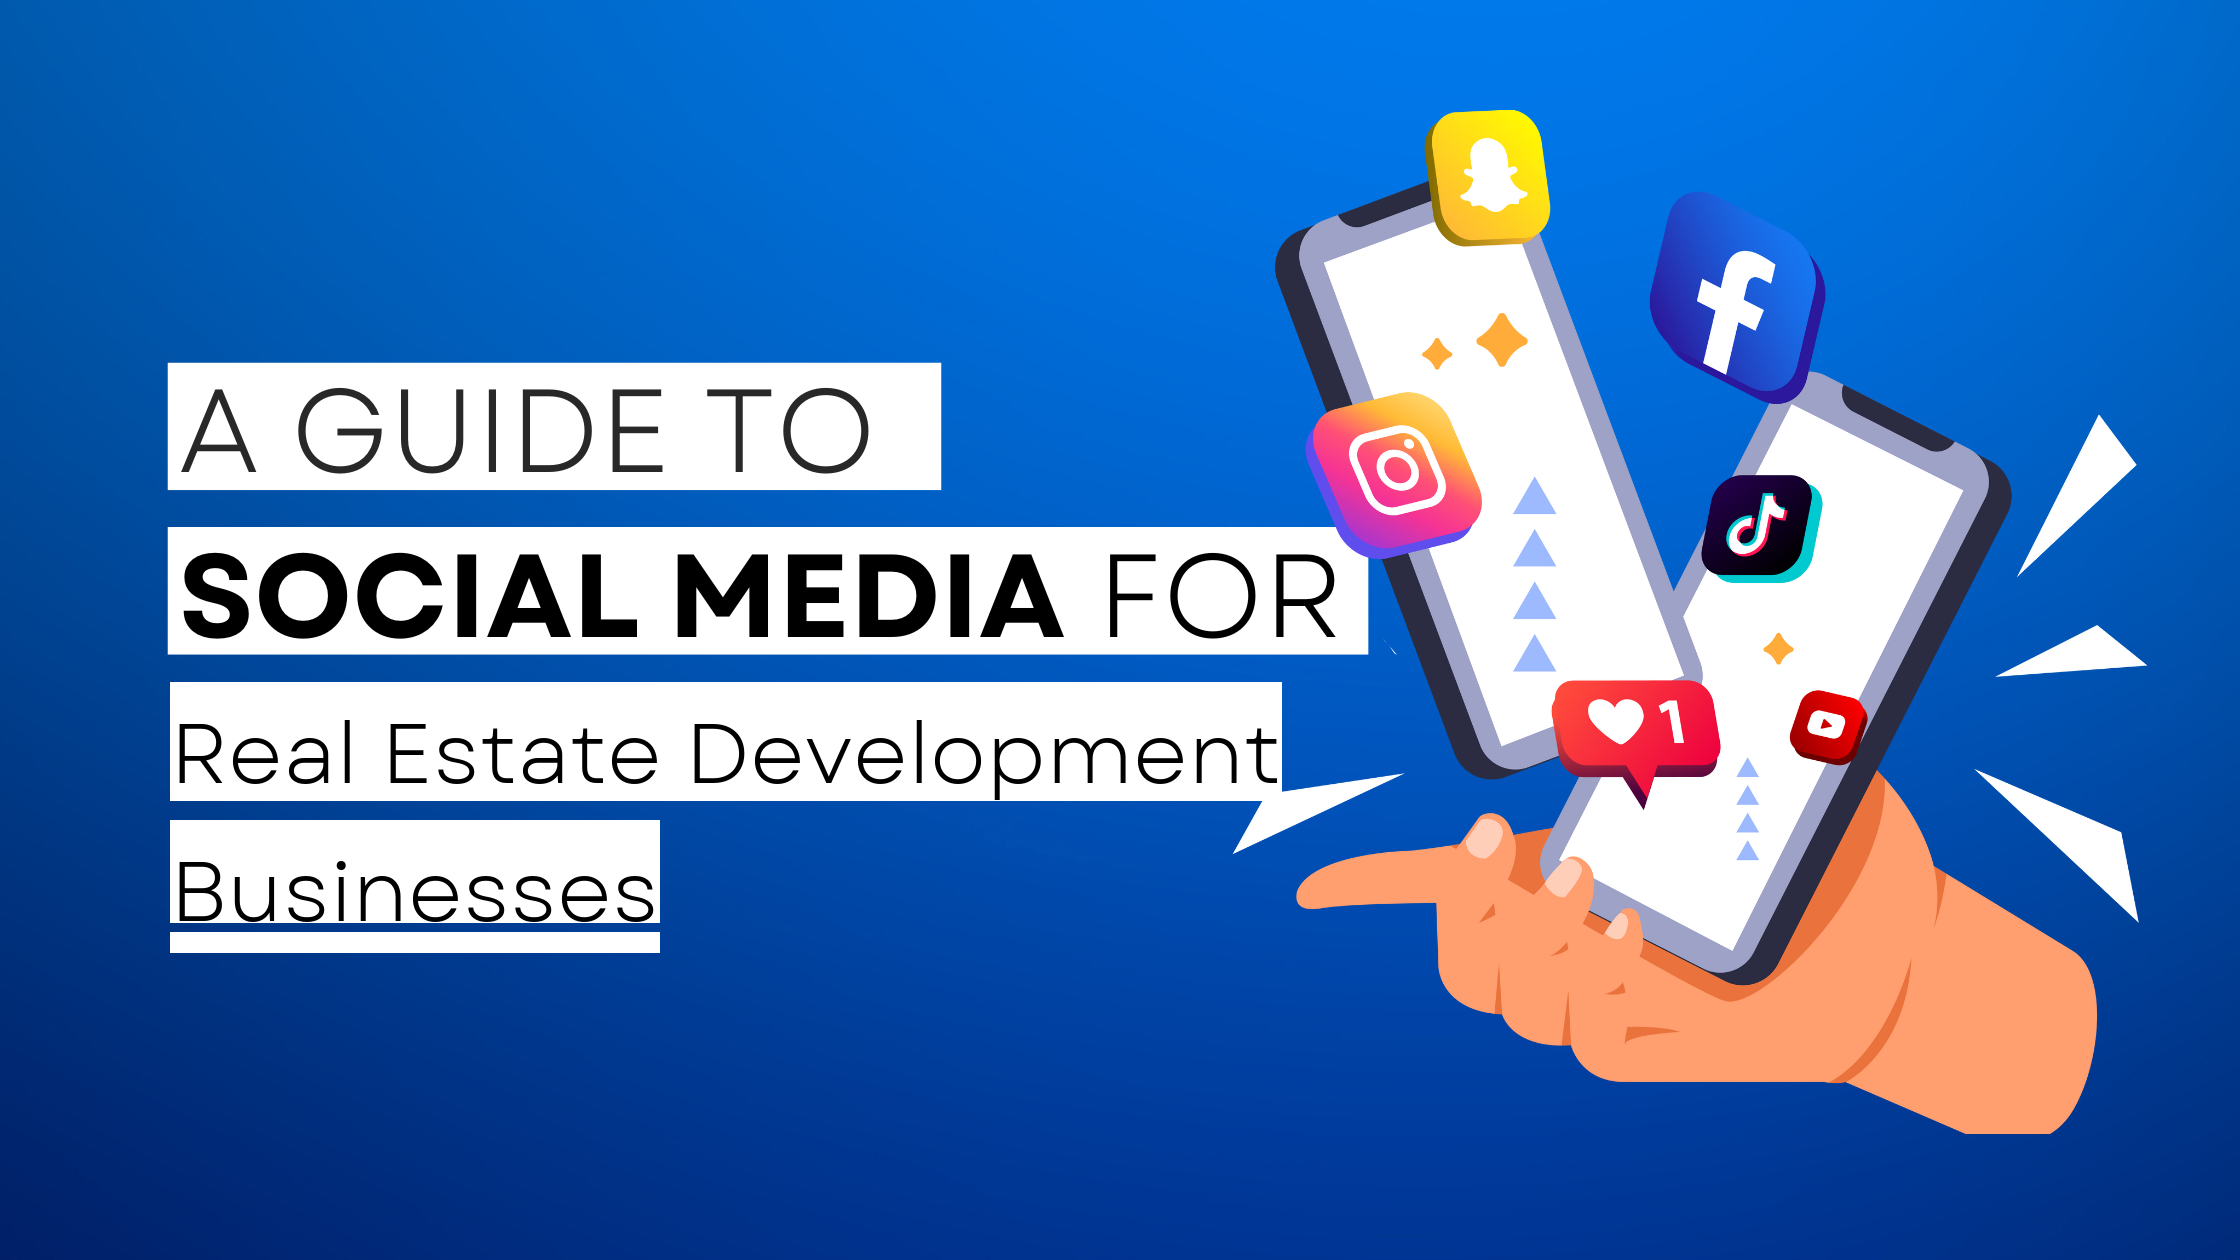 How to start Real Estate Development on social media